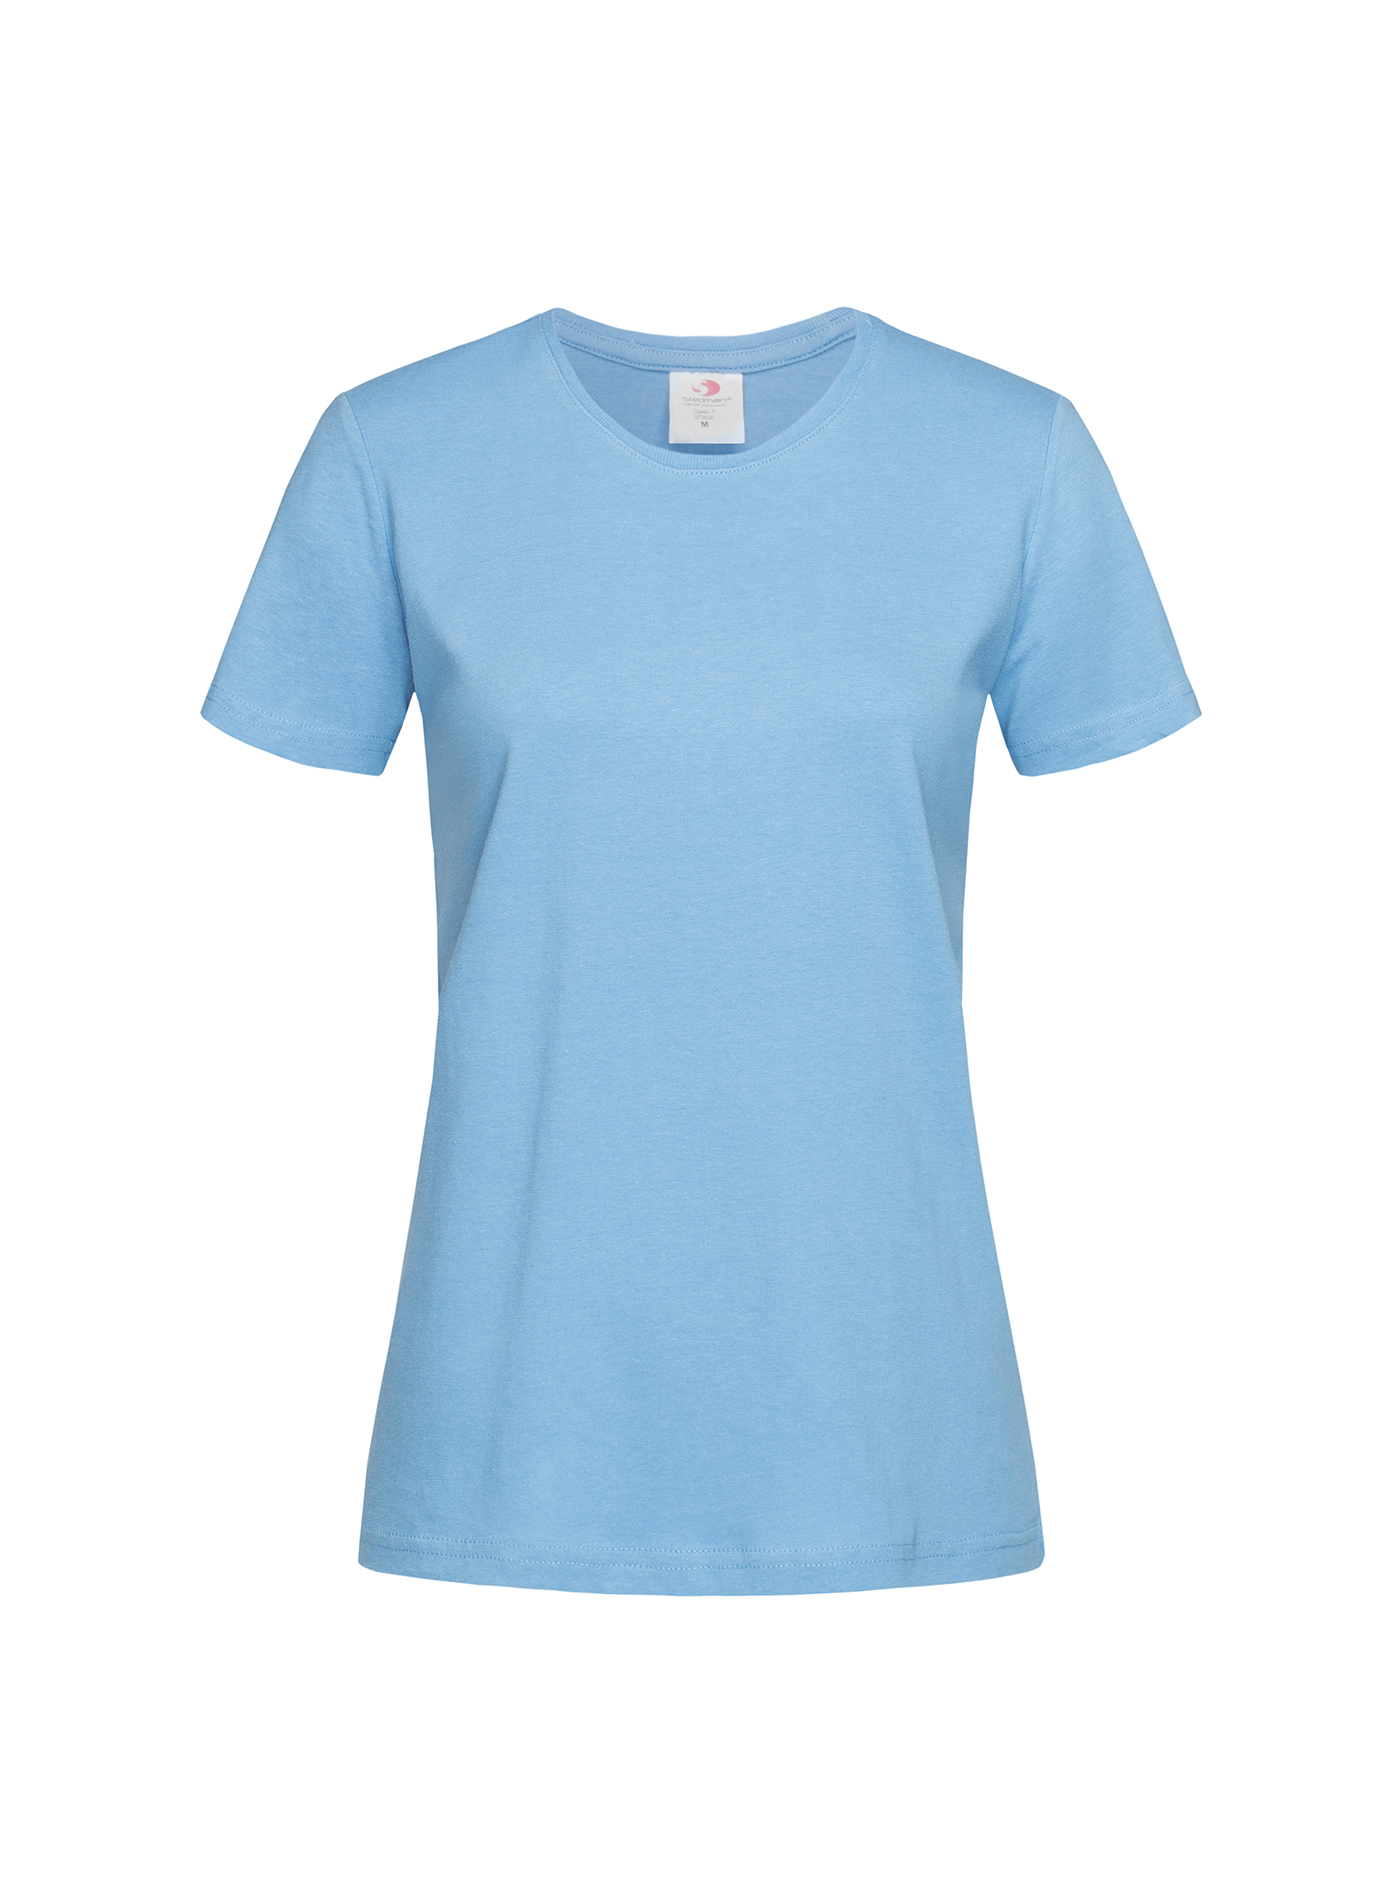 Dámské tričko Stedman Fitted - světle modrá XS